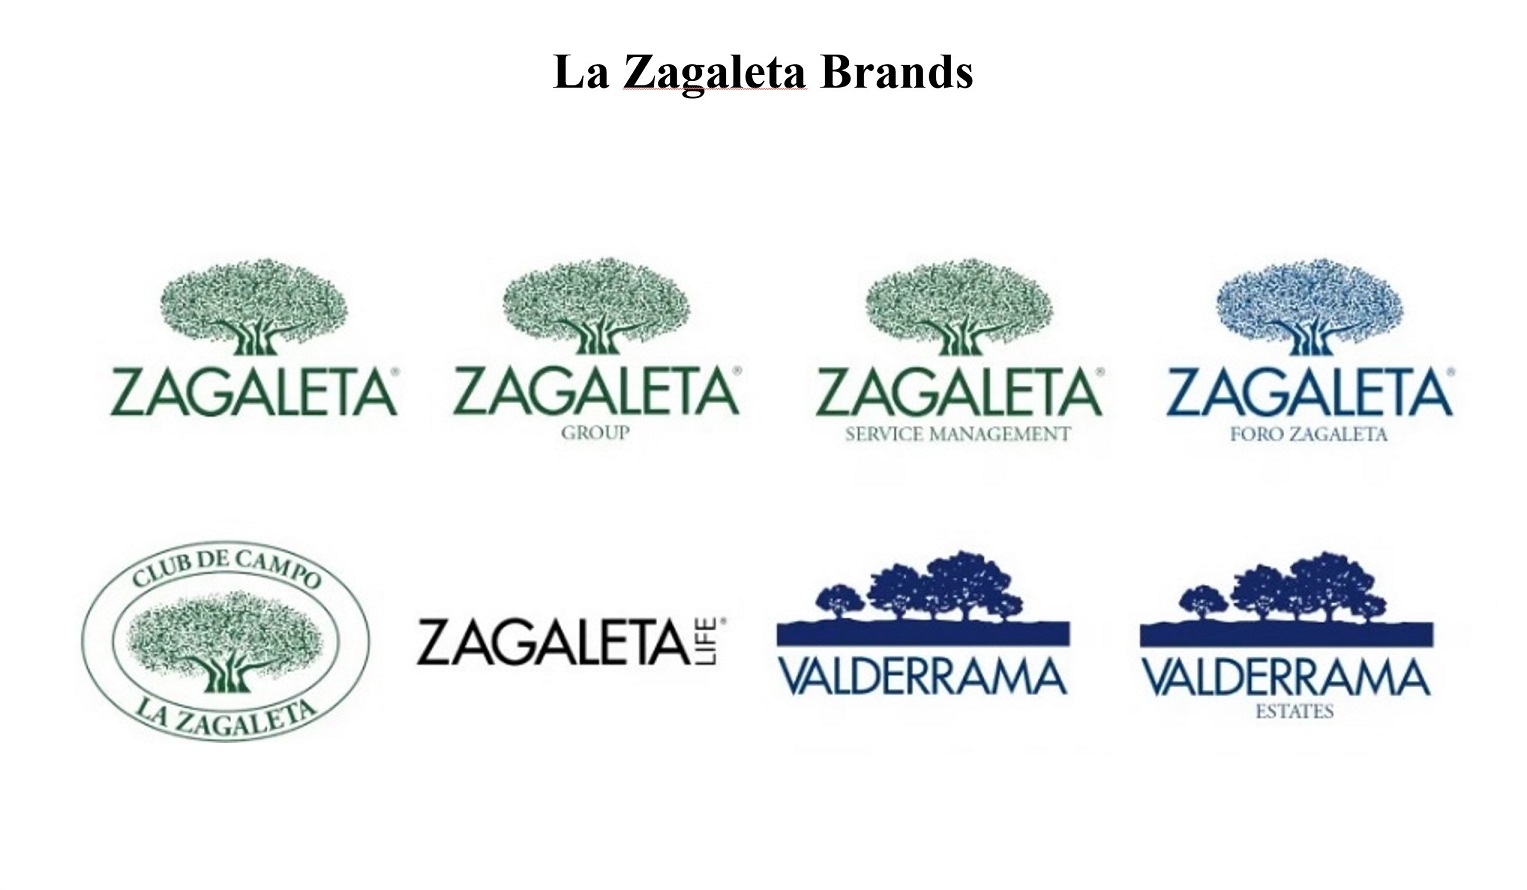 La Zagaleta brands